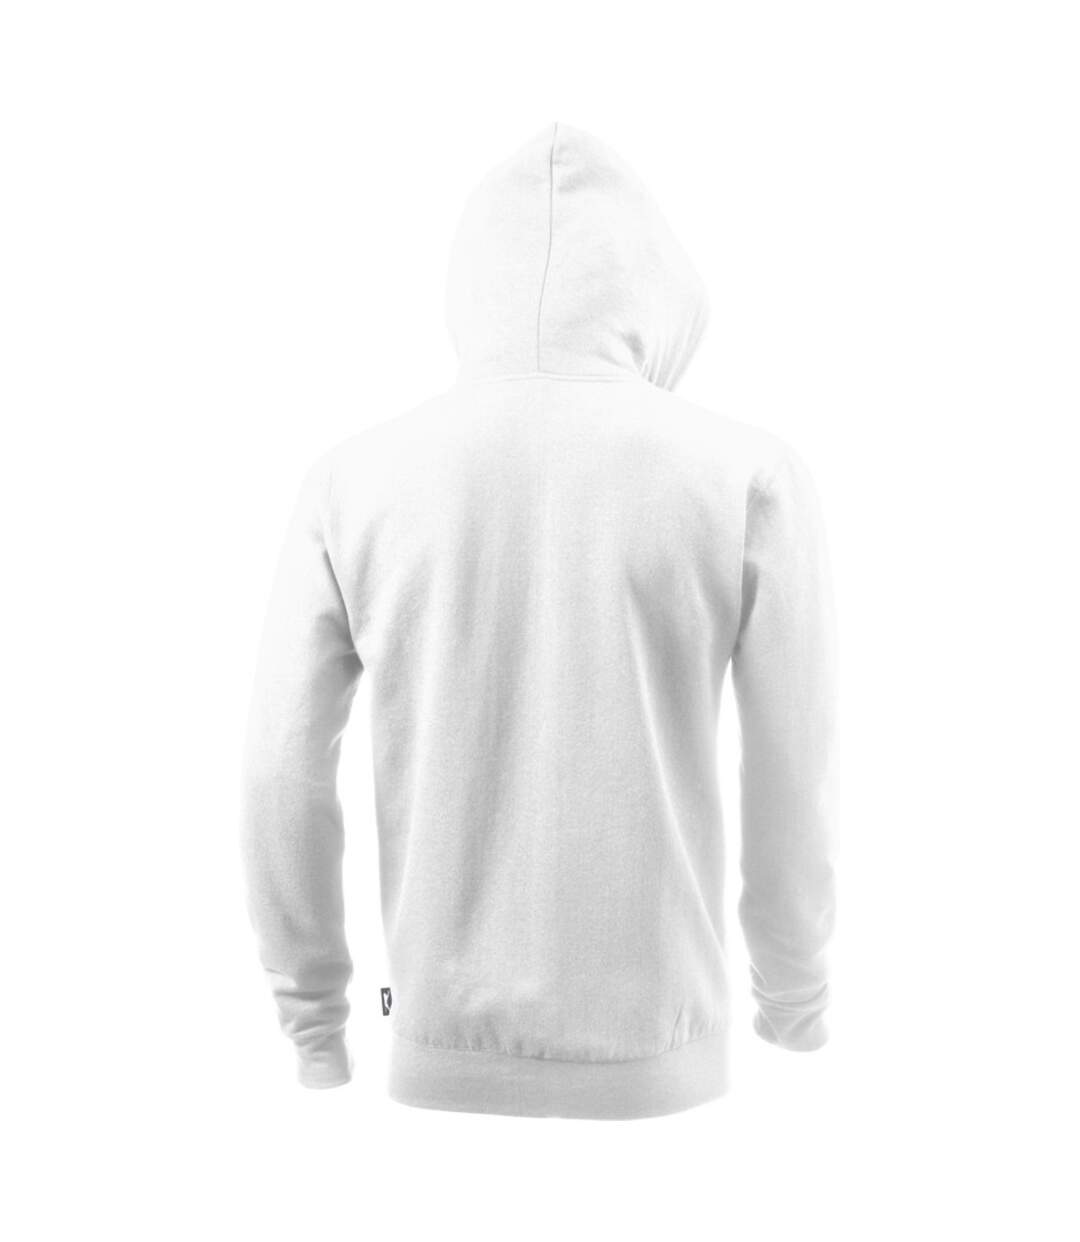 Slazenger Mens Open Full Zip Hooded Sweater (White) - UTPF1762